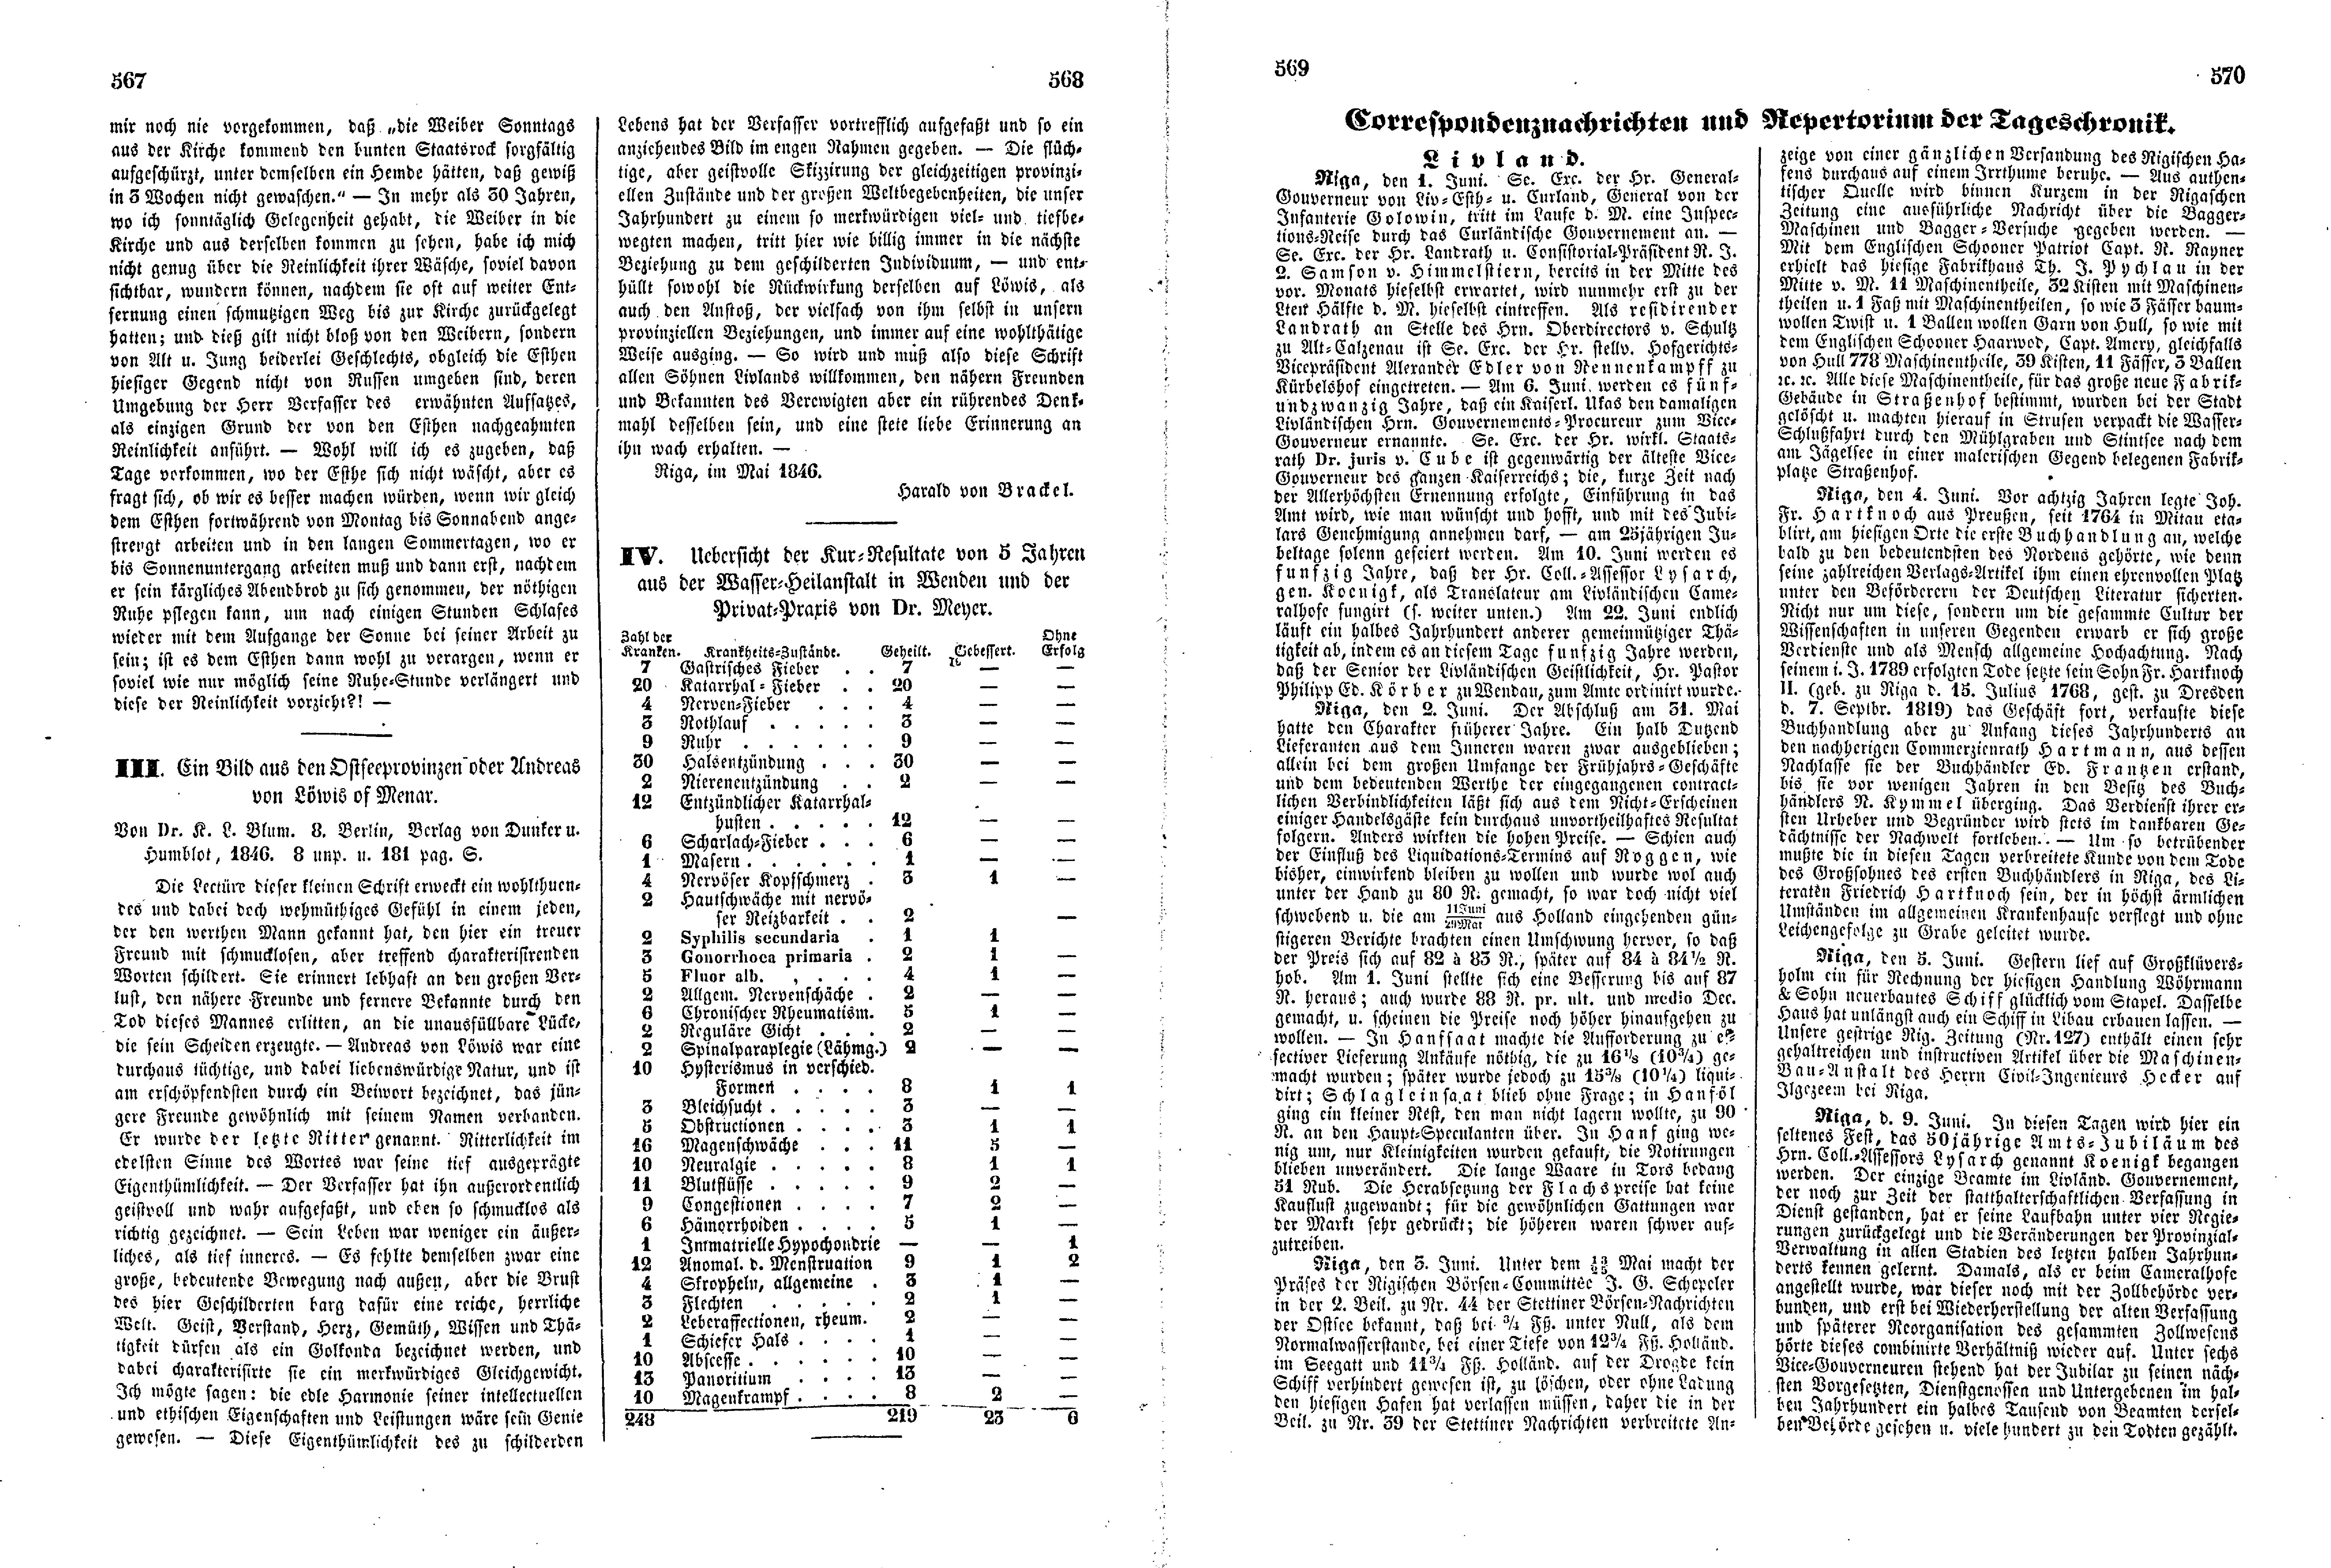 Das Inland [11] (1846) | 147. (567-570) Põhitekst